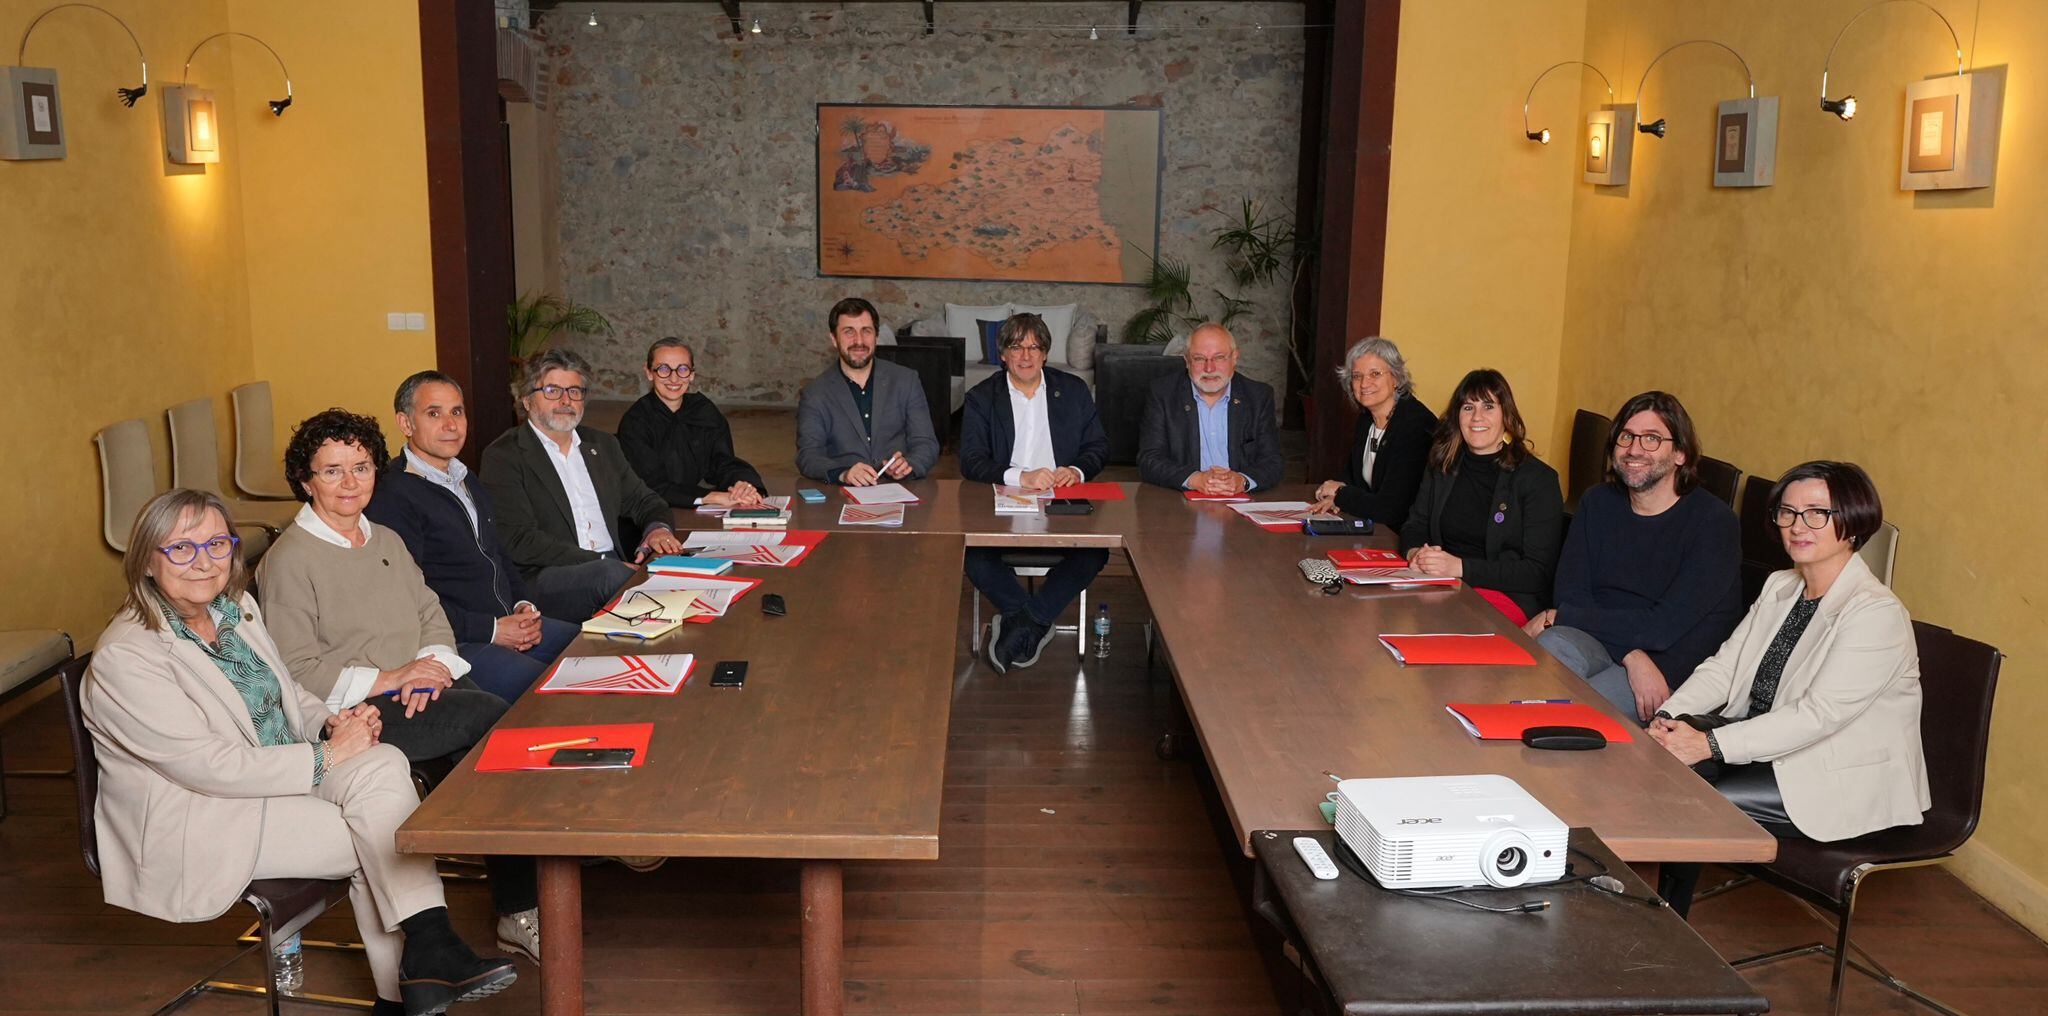 Foto difundida por el llamado Consell de la República de su reunión en Ribesaltes (Francia) este viernes. En el centro de la foto, Carles Puigdemont.